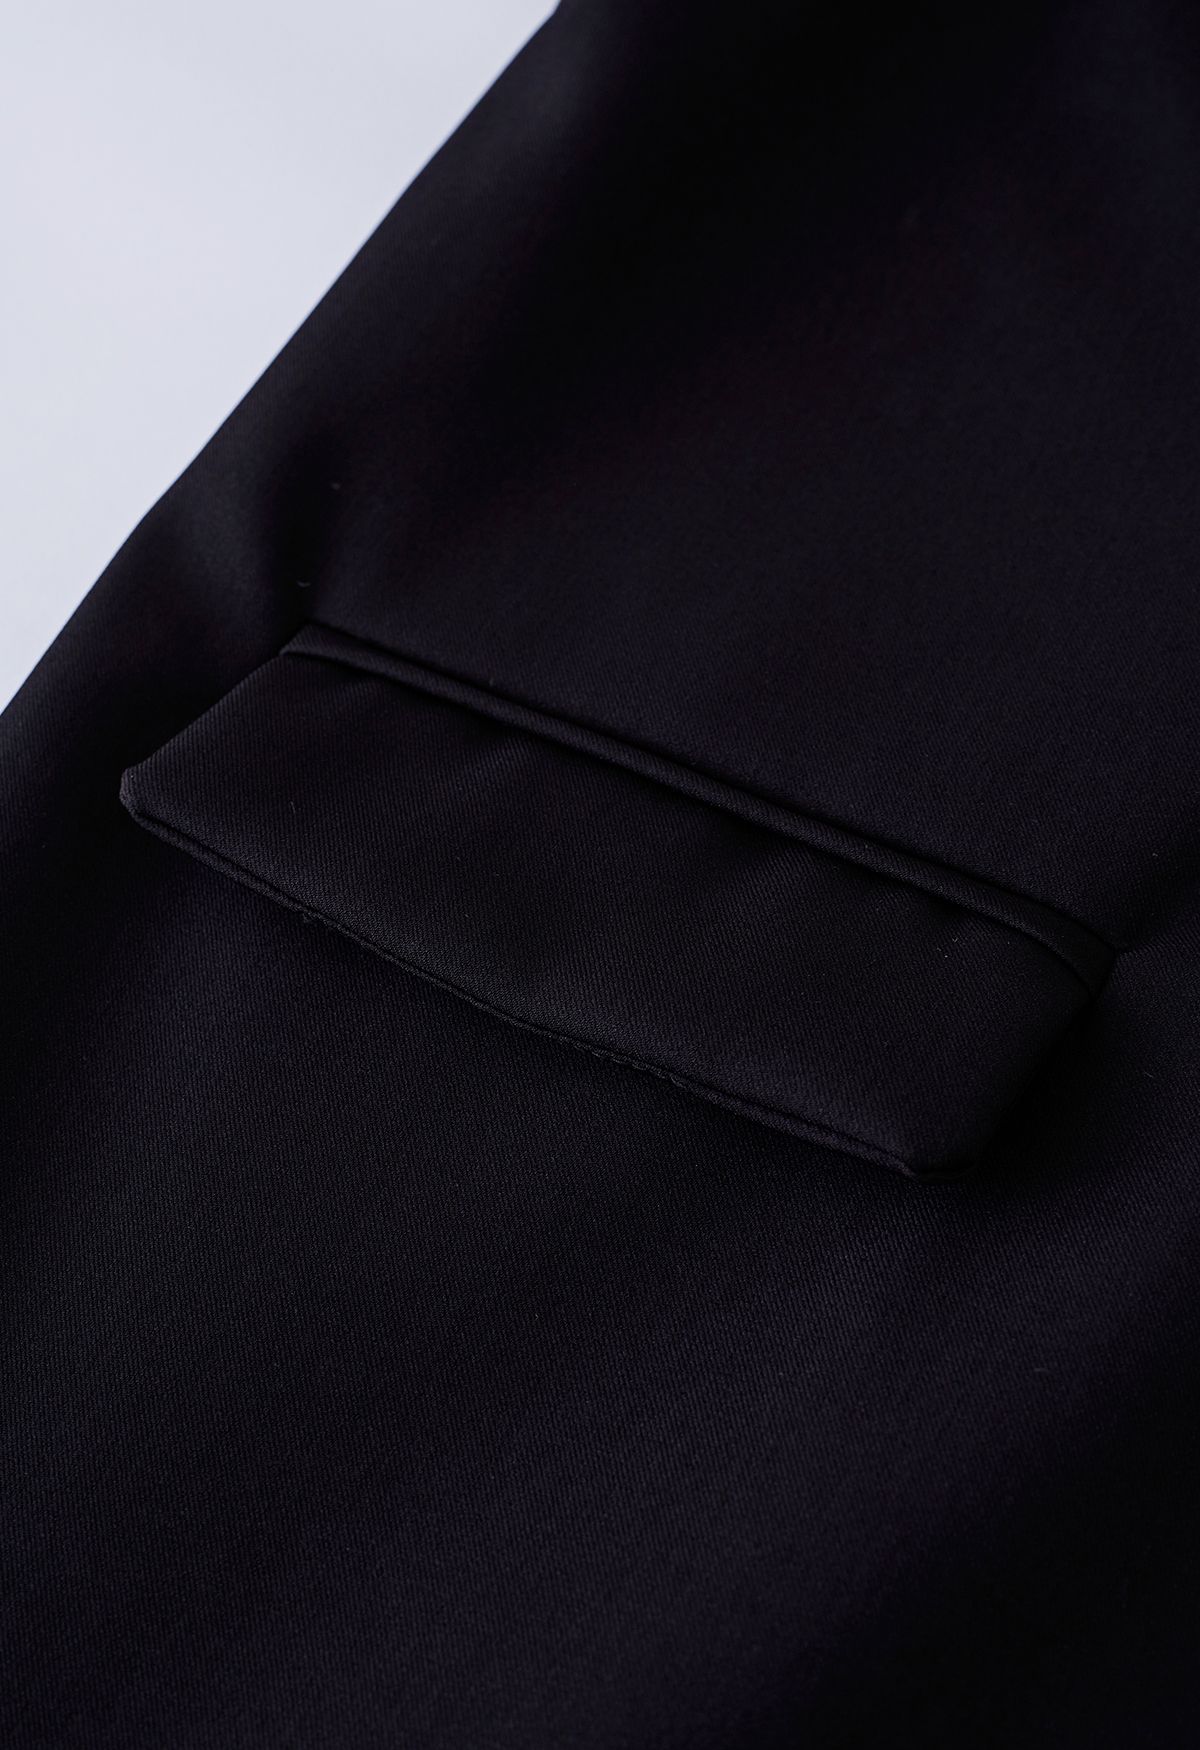 Solid Color Flap Pocket Blazer in Black